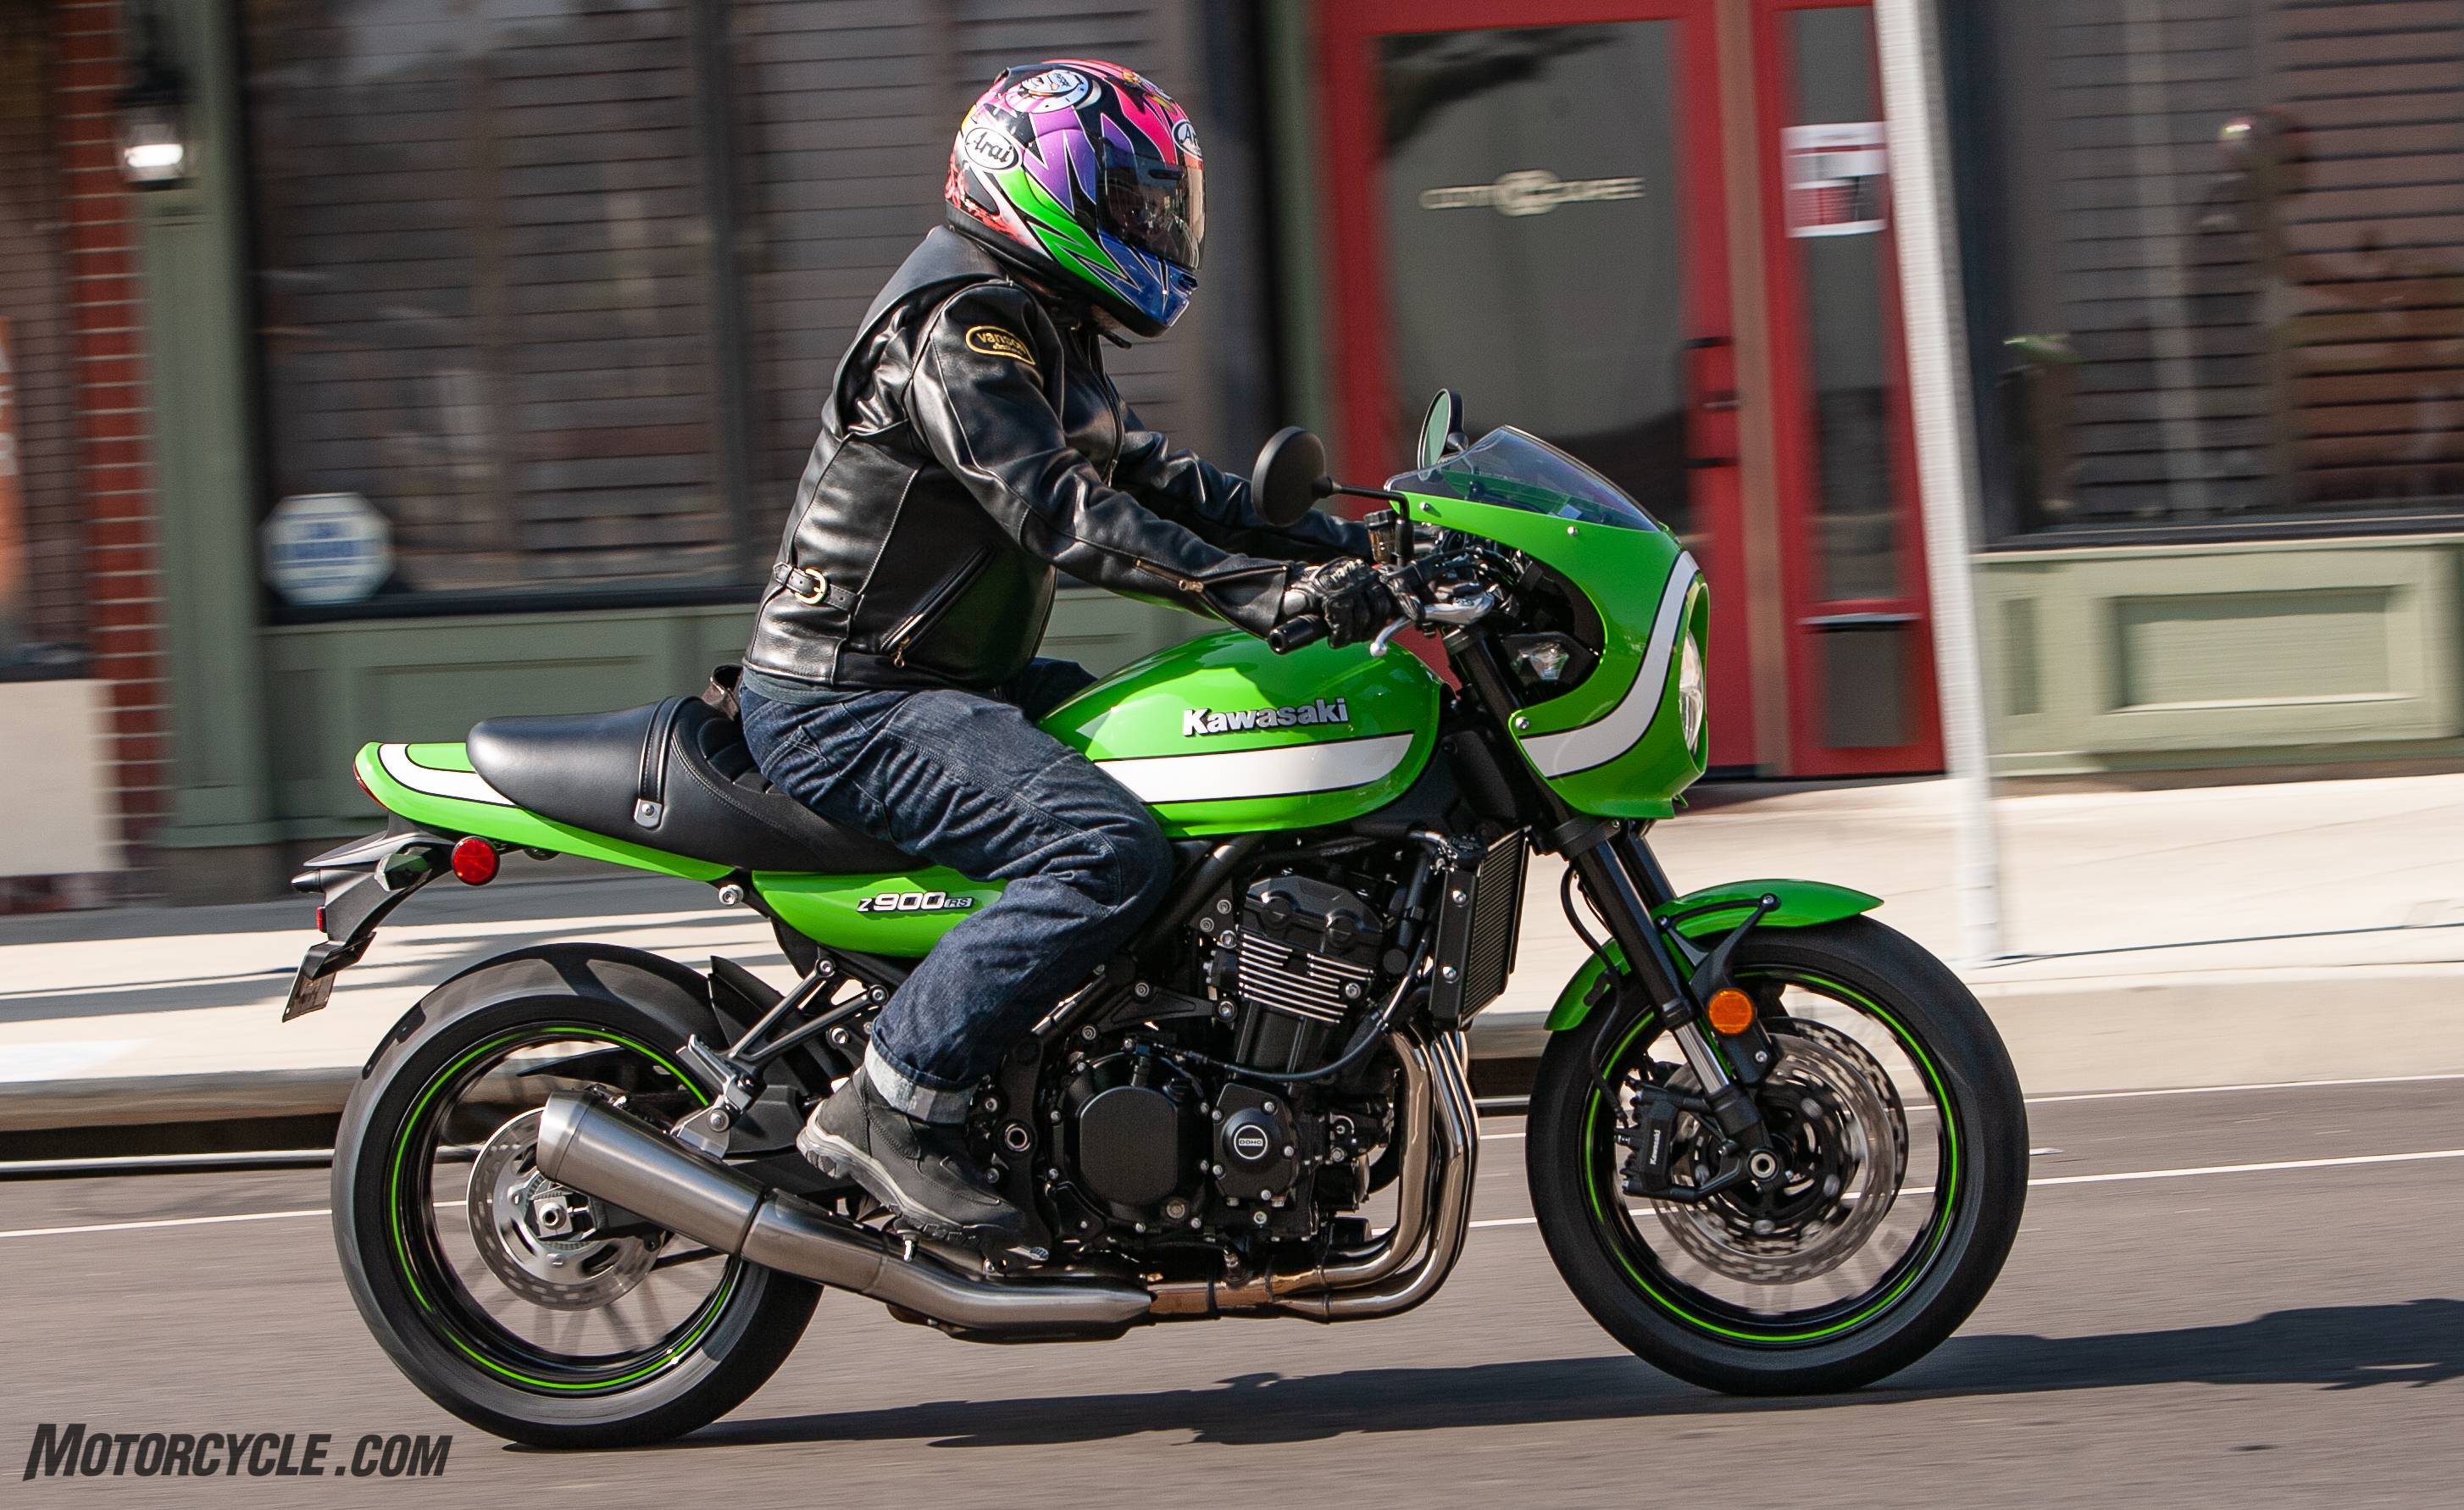 Kawasaki ninja gpz 900 r — самый быстрый и самый производительный мотоцикл своего времени